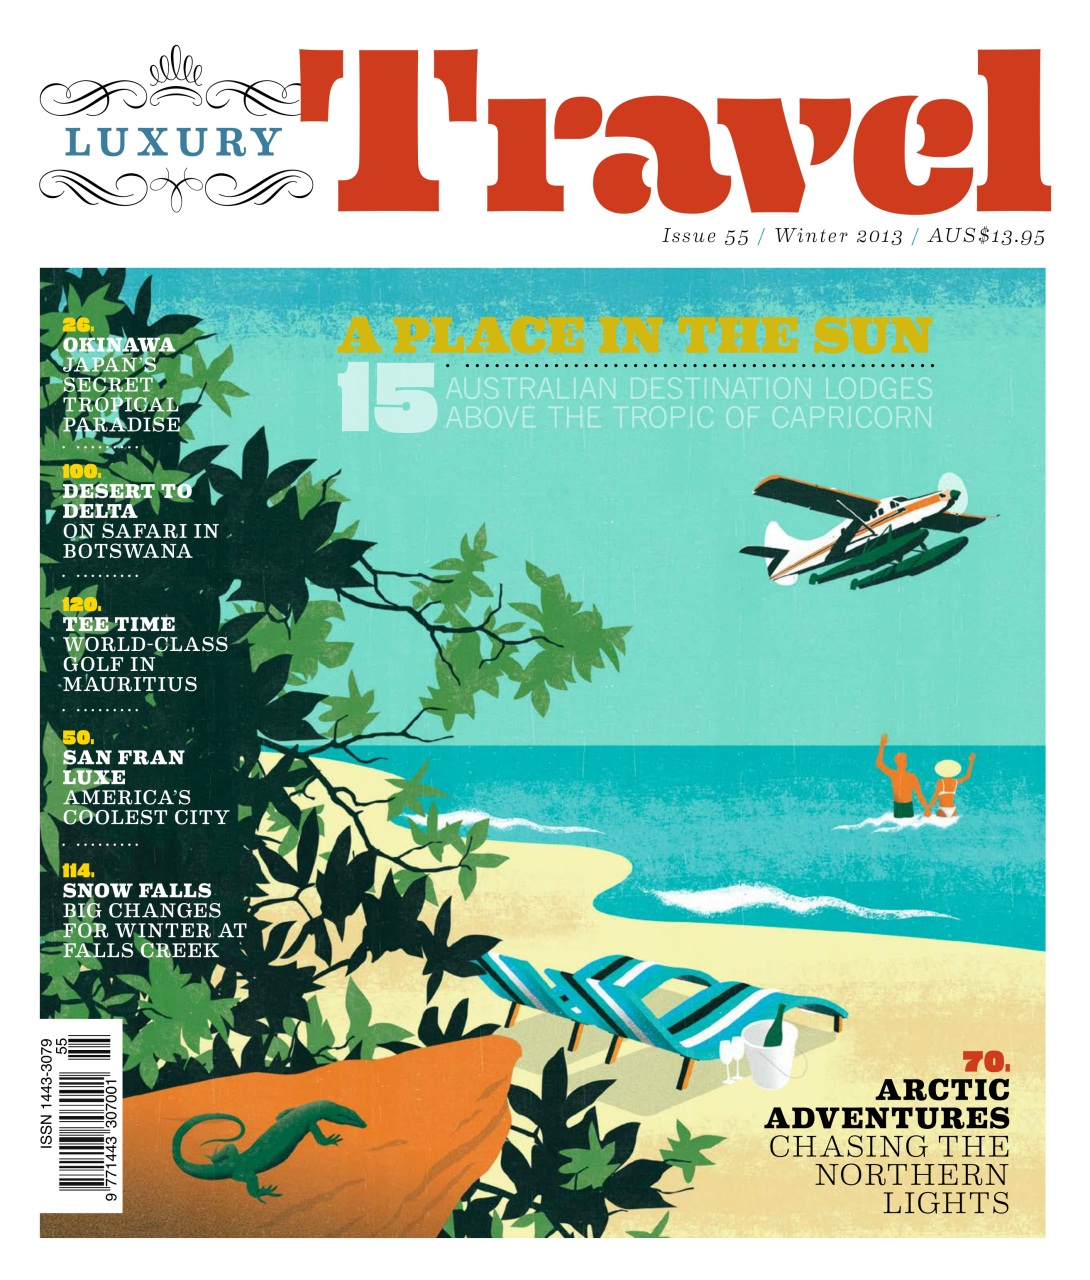 Travel magazines. Журнал о путешествиях. Travel журналы. Travel Magazine обложка. Американский журнал путешествия.